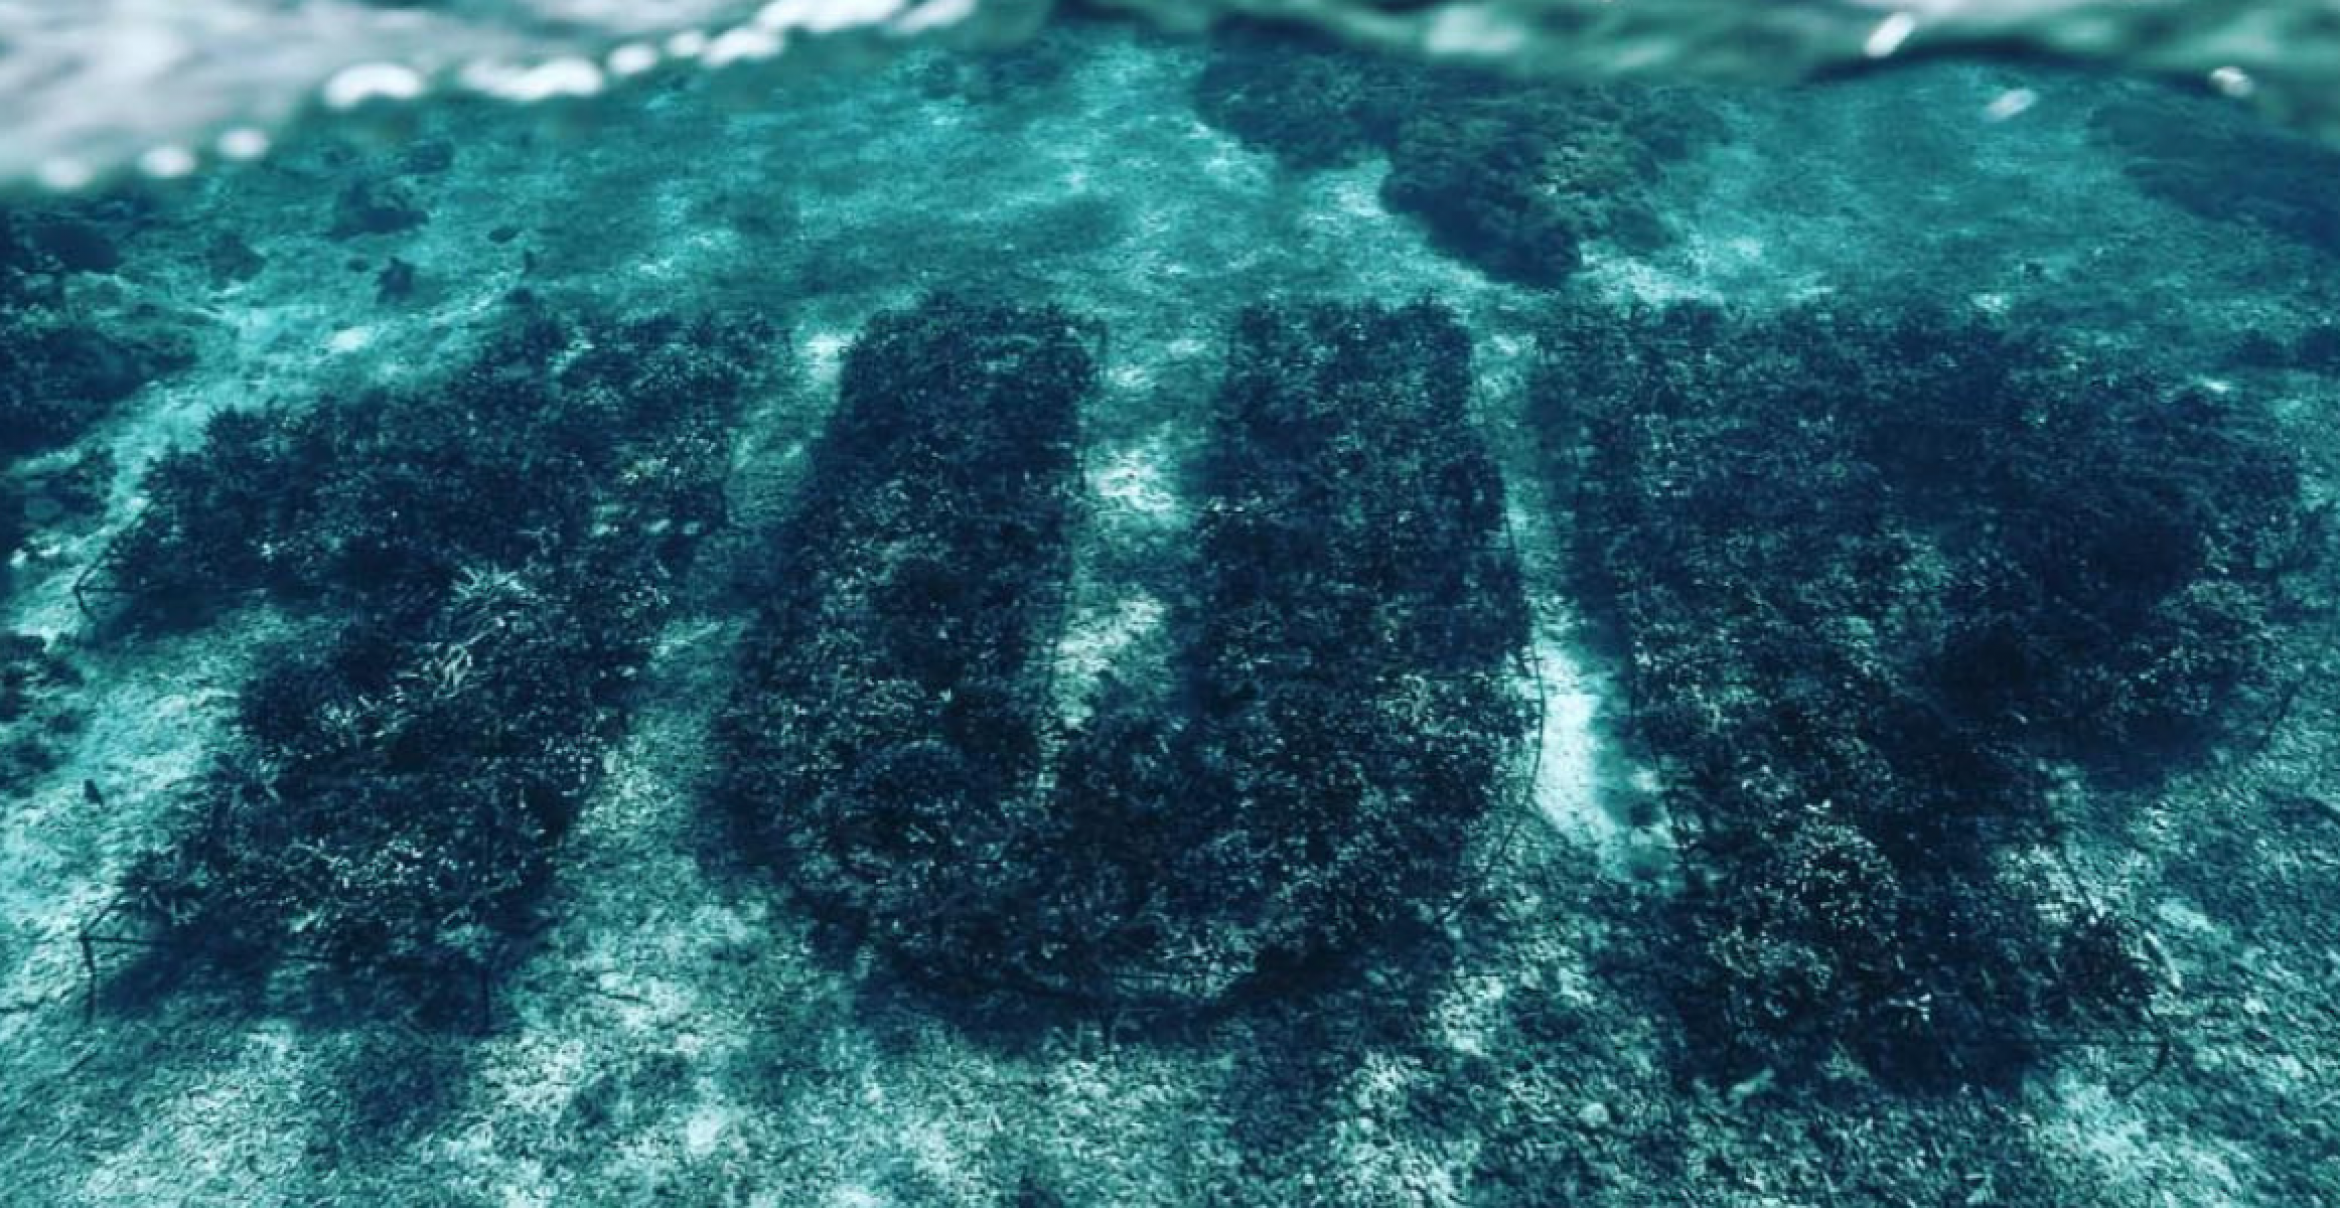 “1Up“ macht mit Unterwasser-“Graffiti“ auf das Korallensterben aufmerksam